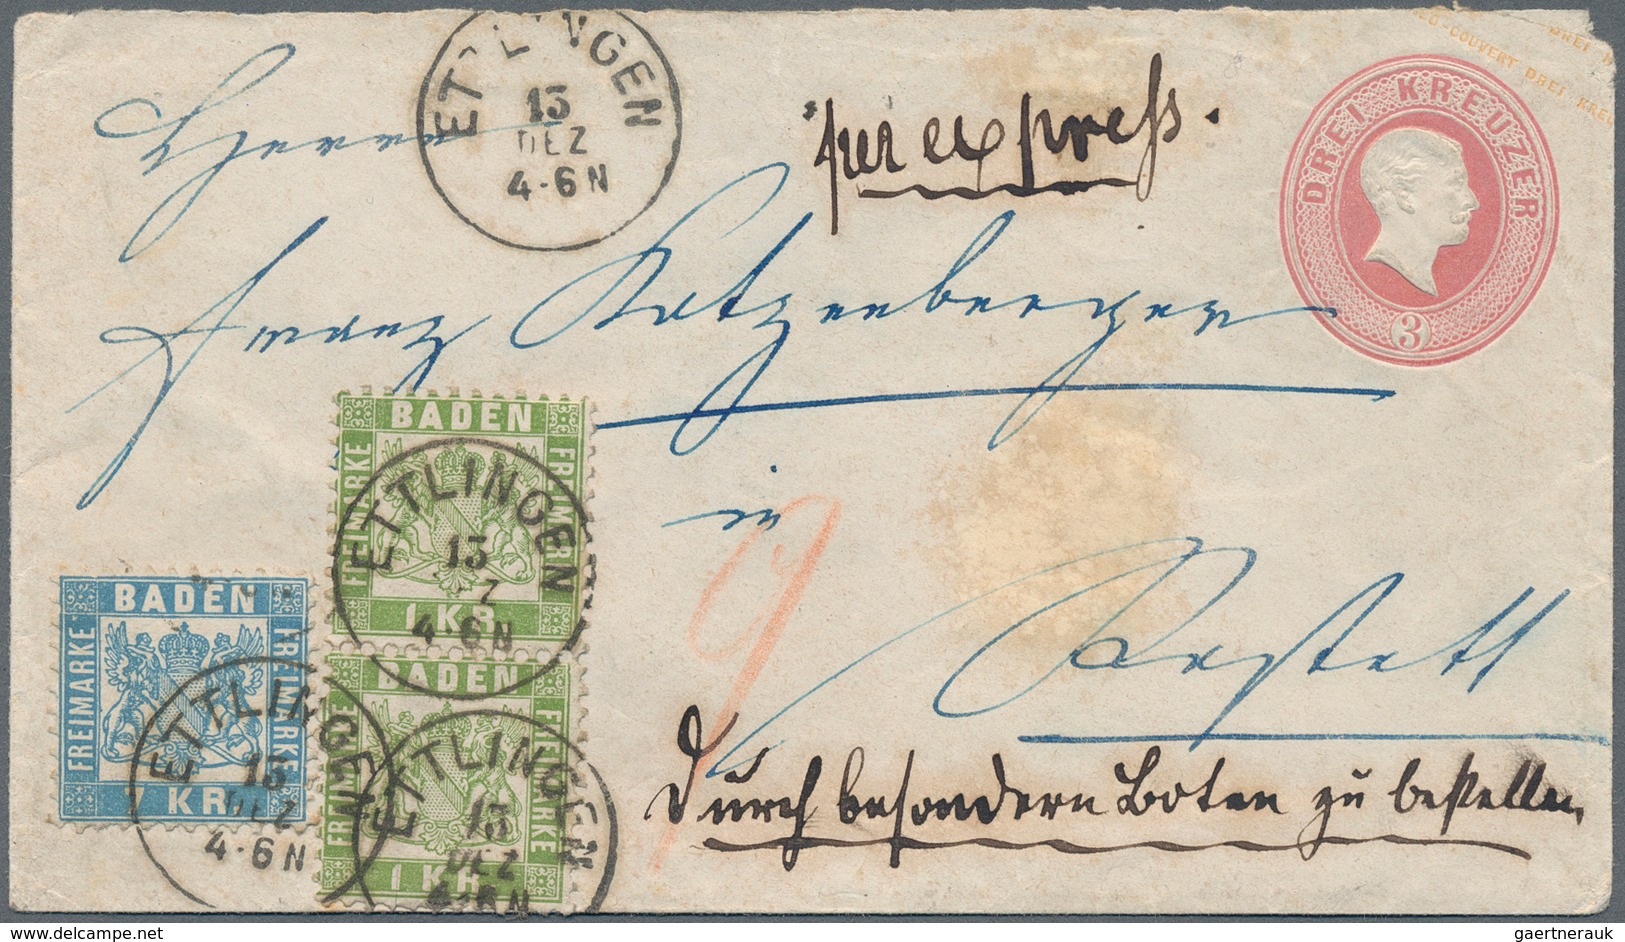 Baden - Ganzsachen: 1866/68: Ganzsachenumschlag 3 Kr. Rosa Mit 1 Kr. Lebhaftgrün Im Senkrechten Paar - Sonstige & Ohne Zuordnung